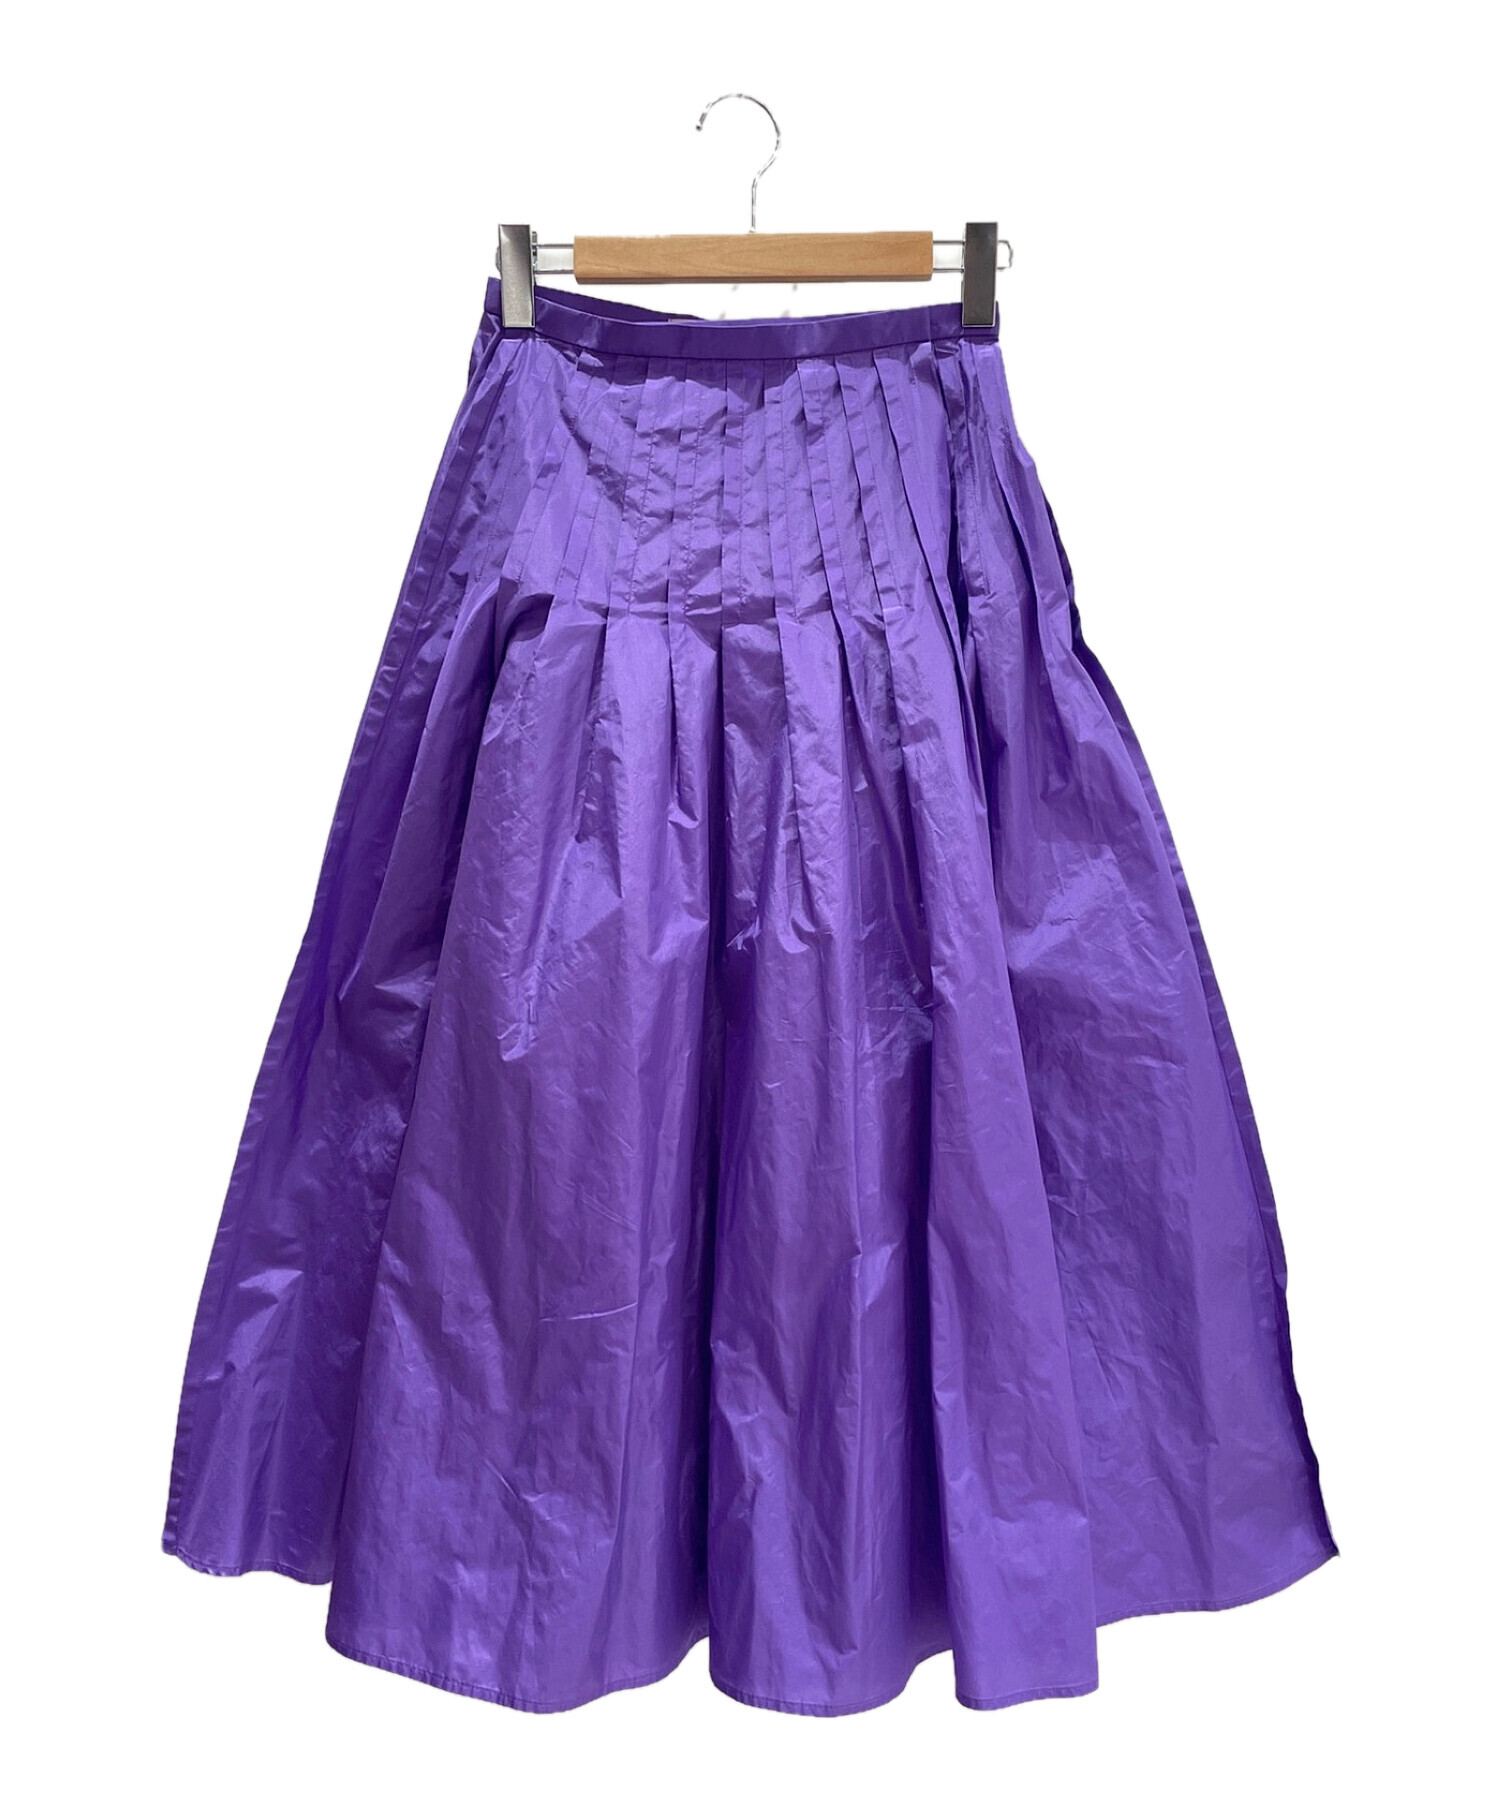 BLAMINK (ブラミンク) ギャザースカート パープル サイズ:36